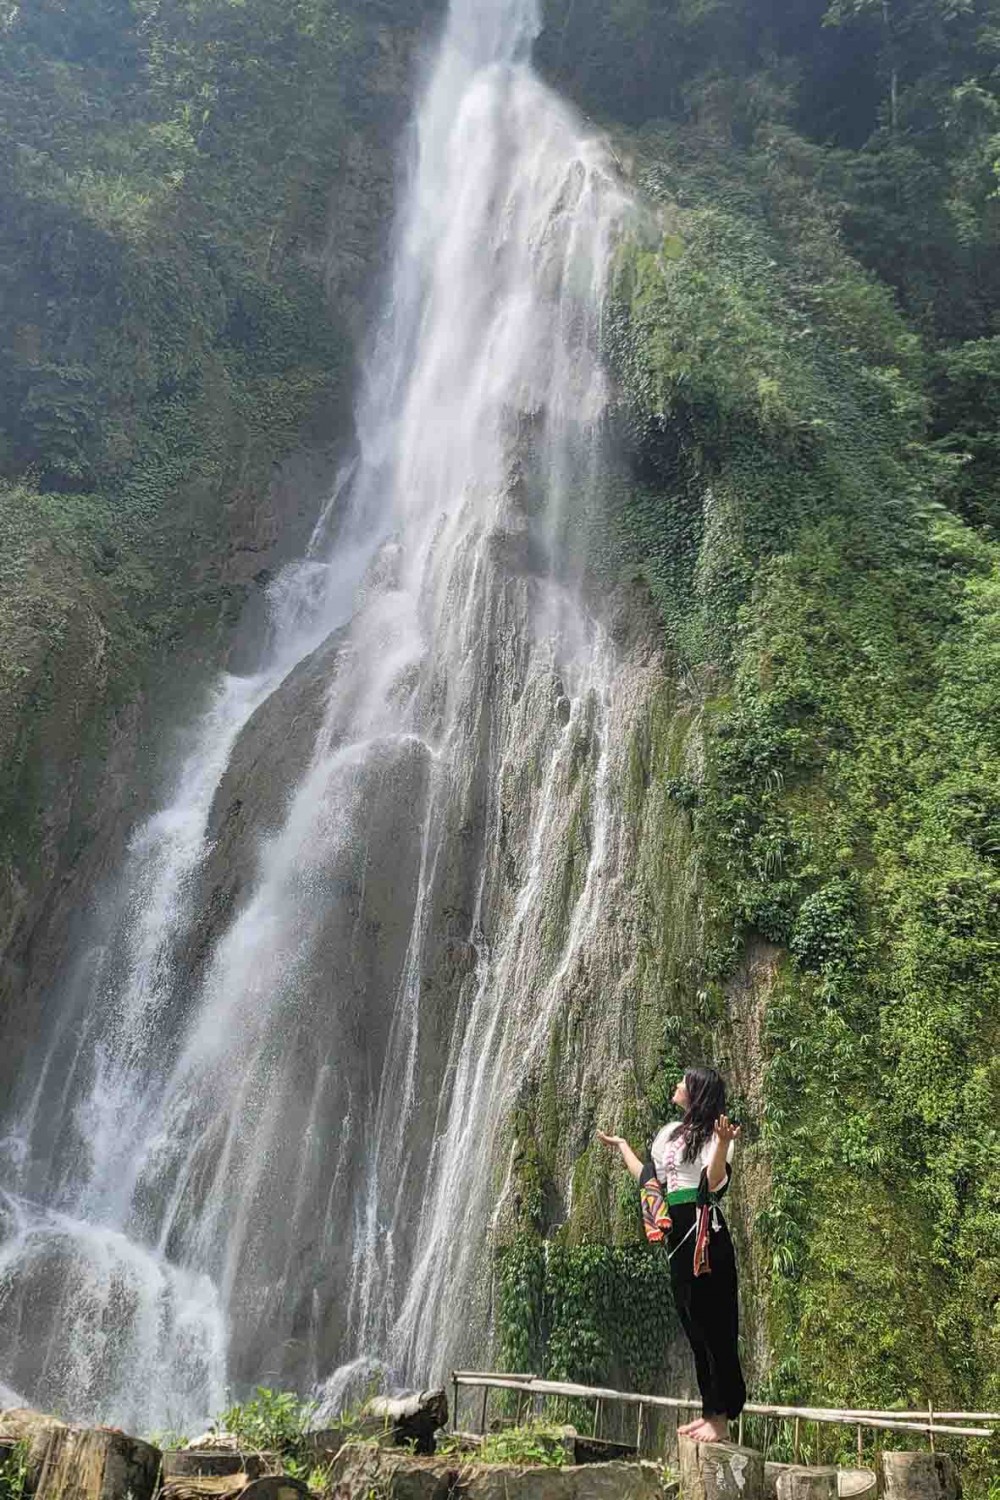 cảm giác mát mẻ, sảng khoái là những gì du khách có thể cảm nhận được khi đứng dưới chân thác Tạt Cạng bởi những bụi nước từ trên cao đổ xuống